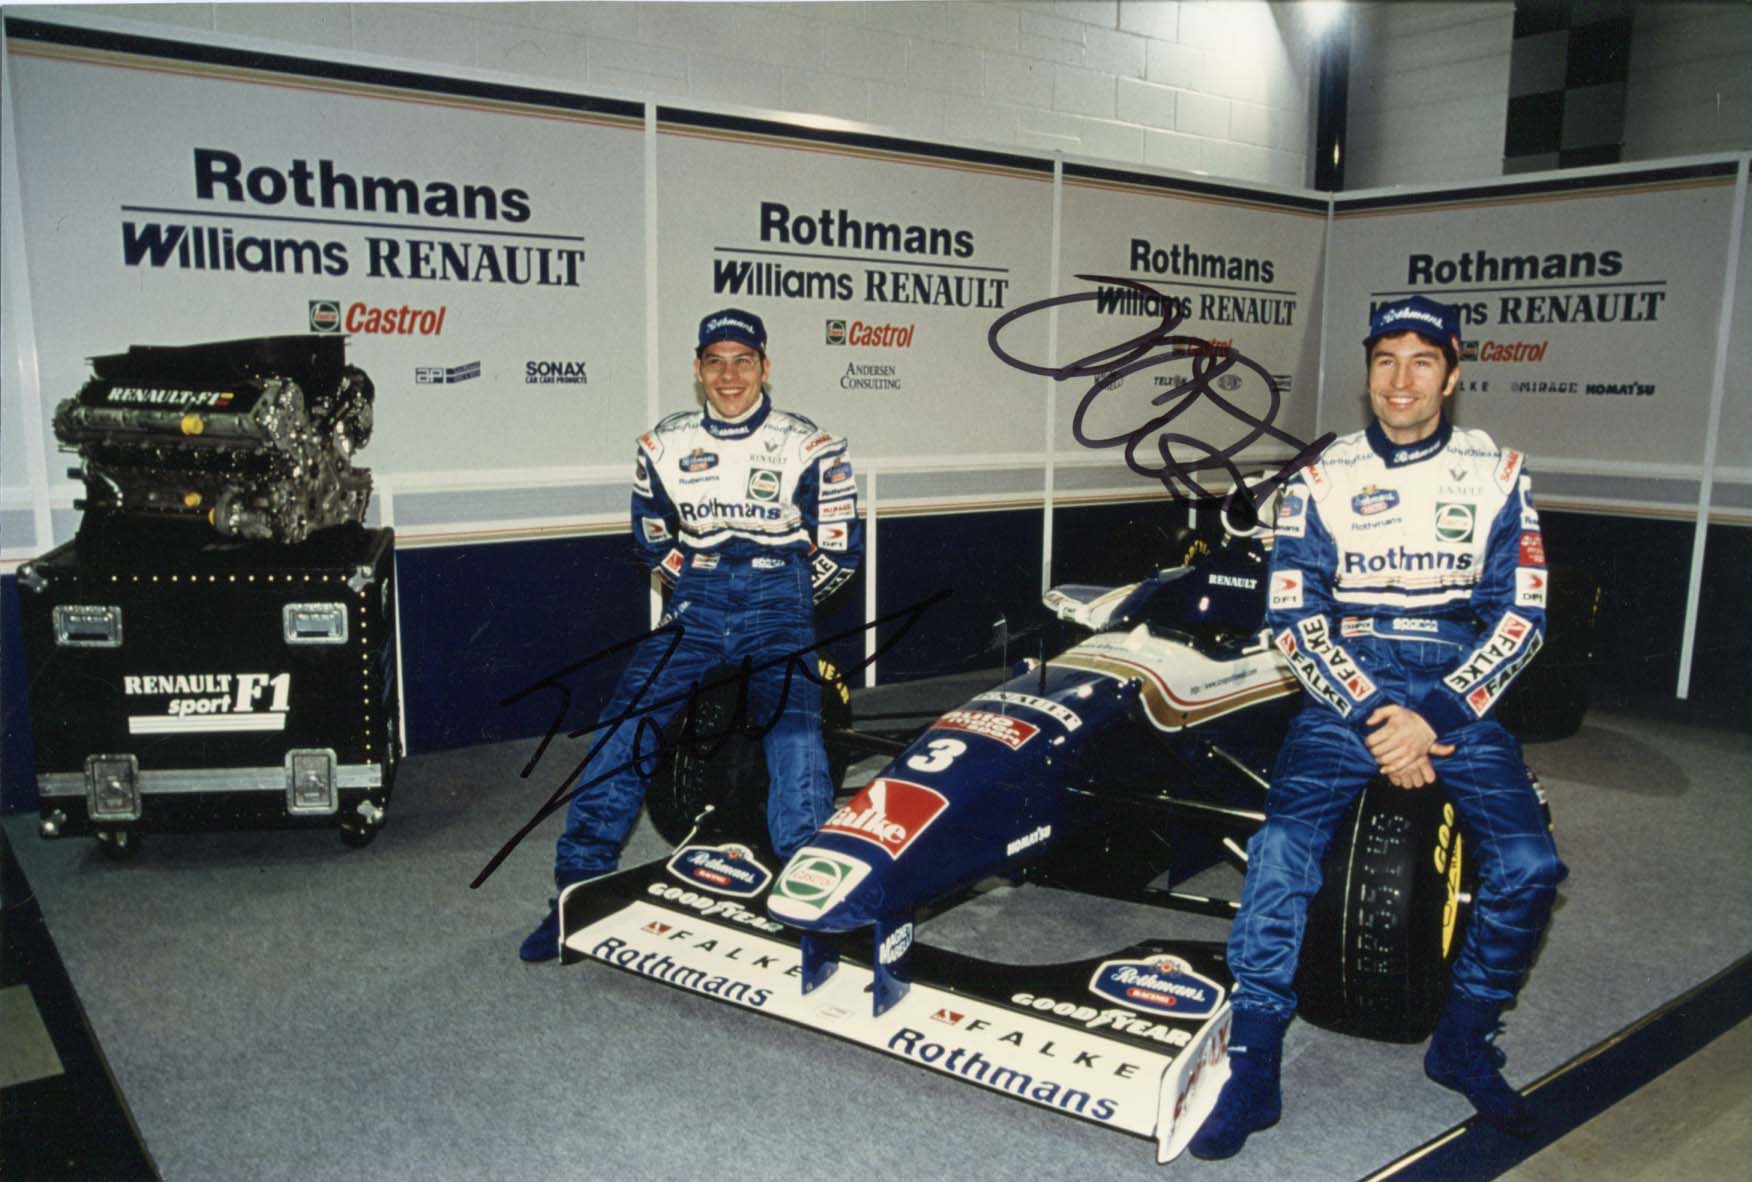 Jacques Villeneuve & Heinz-Harald Frentzen Autographs